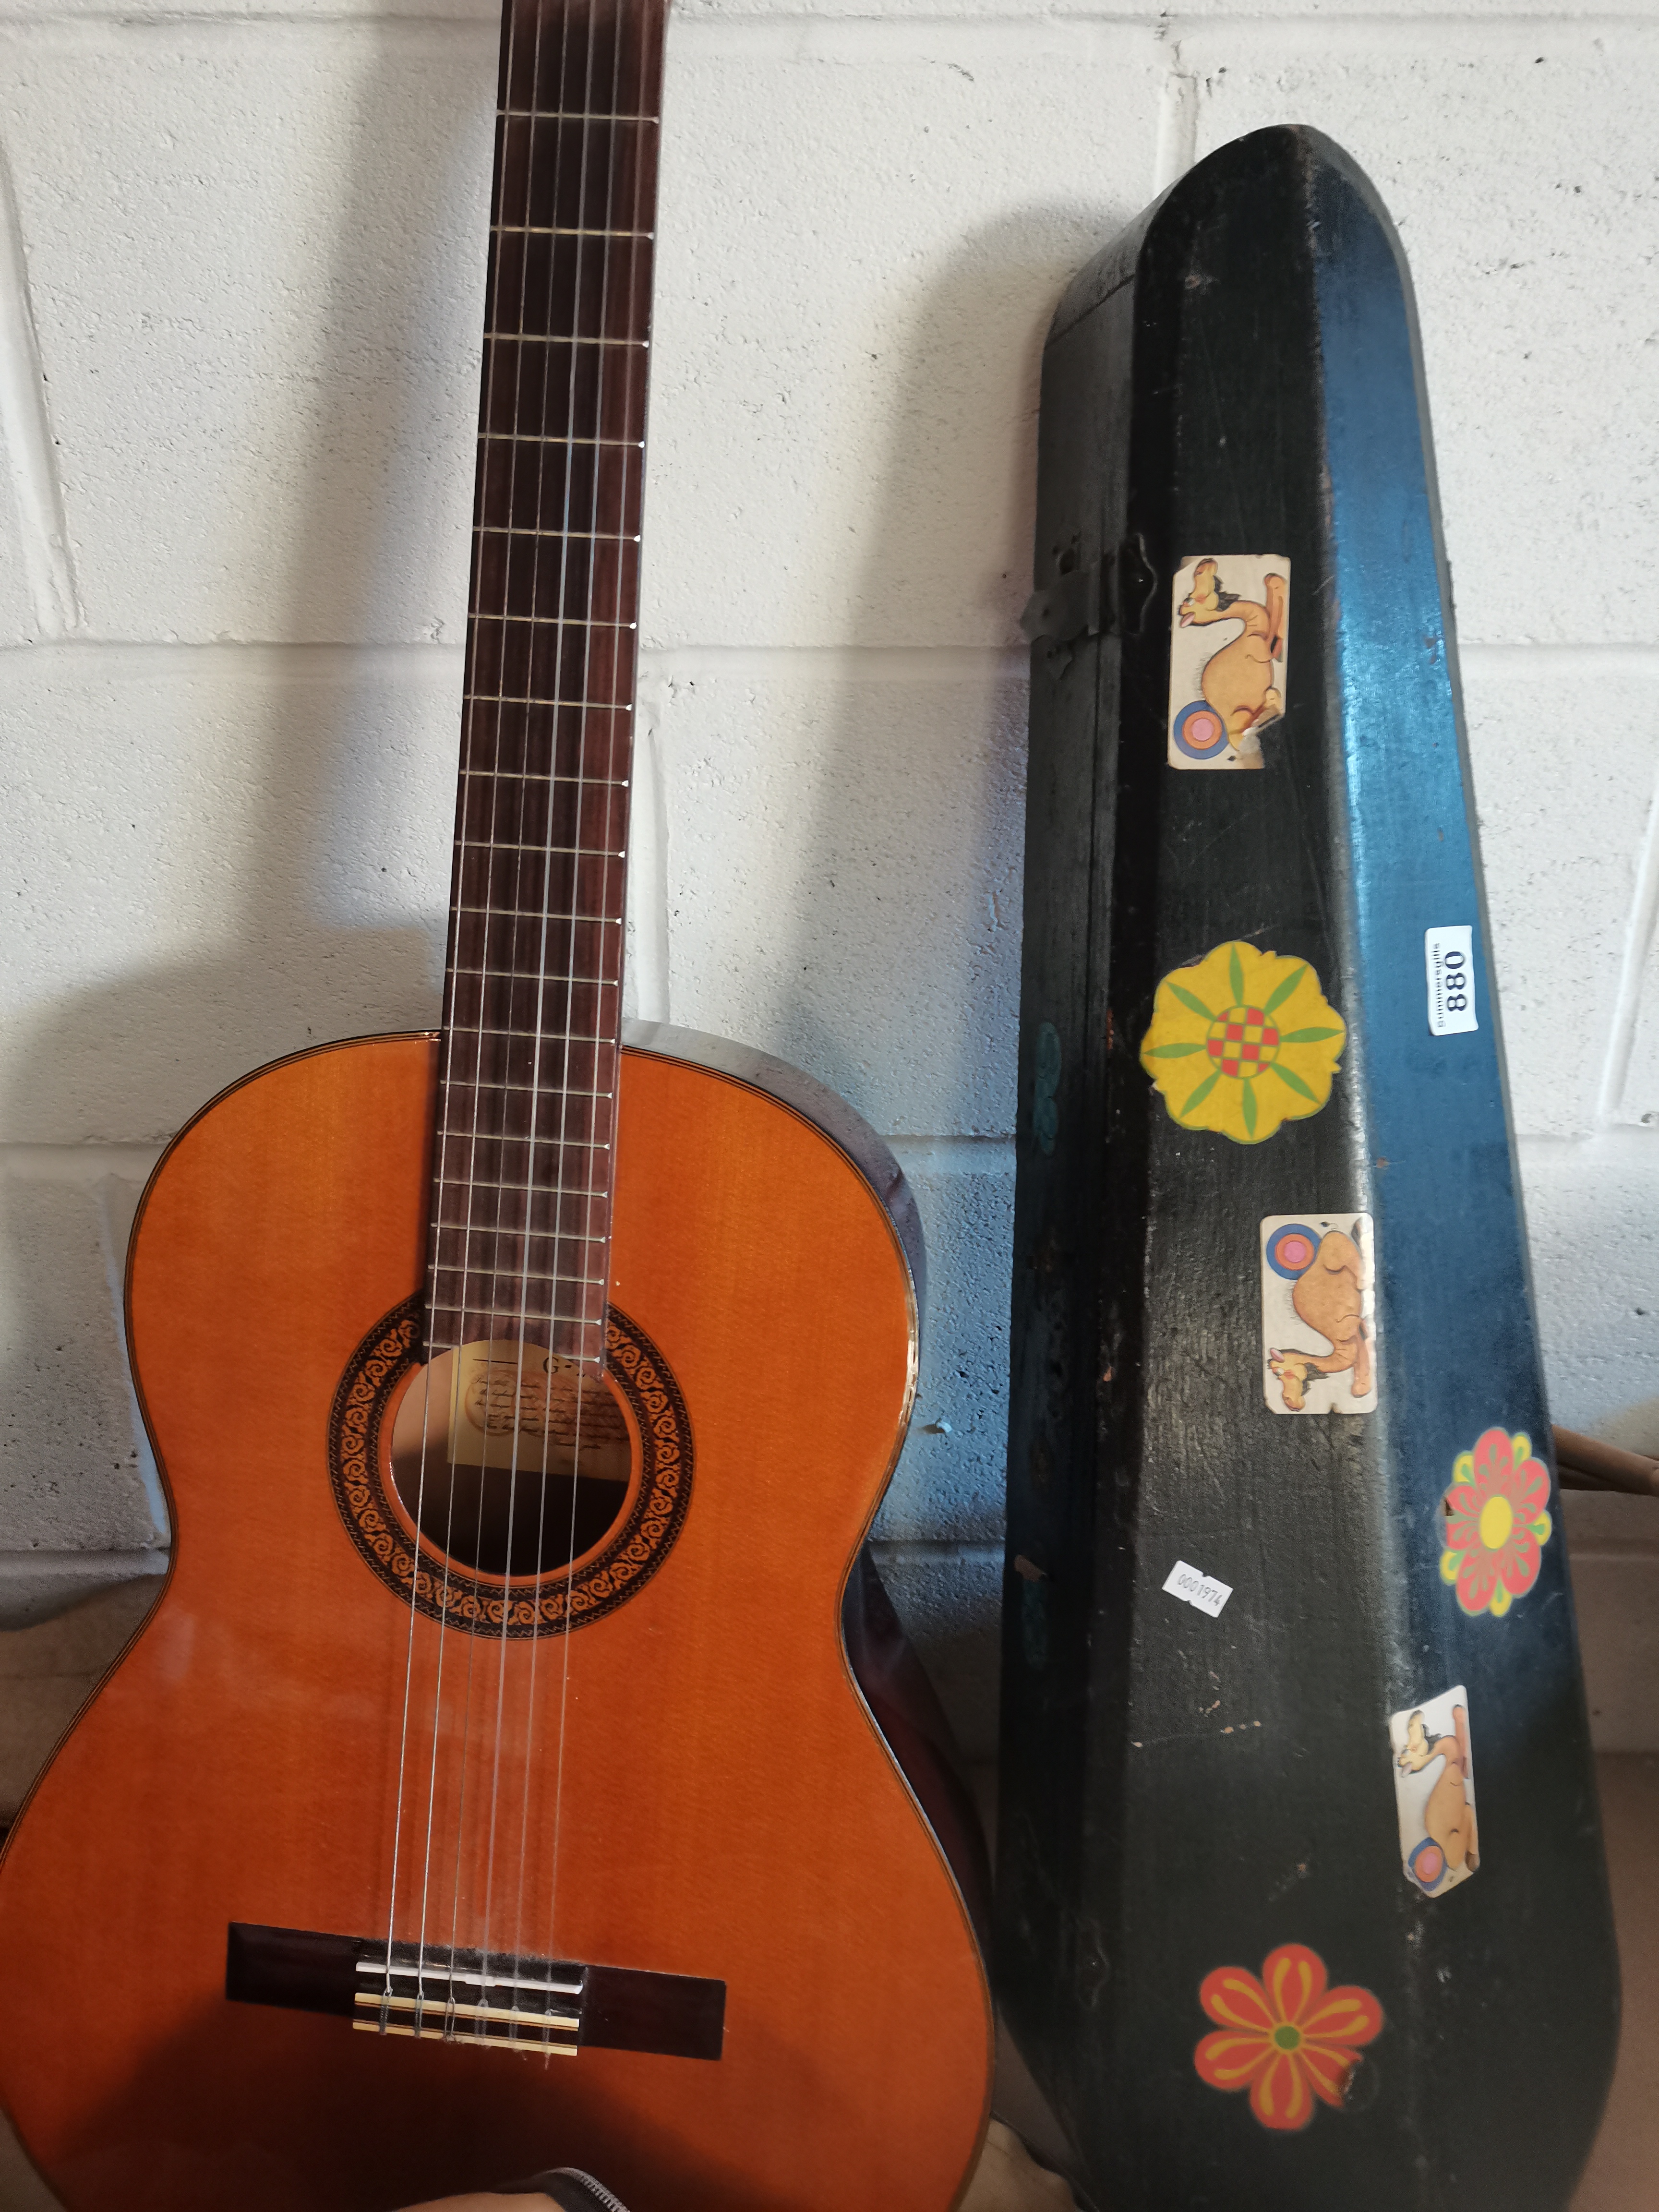 Yamaha G 225 acoustic guitar and violin